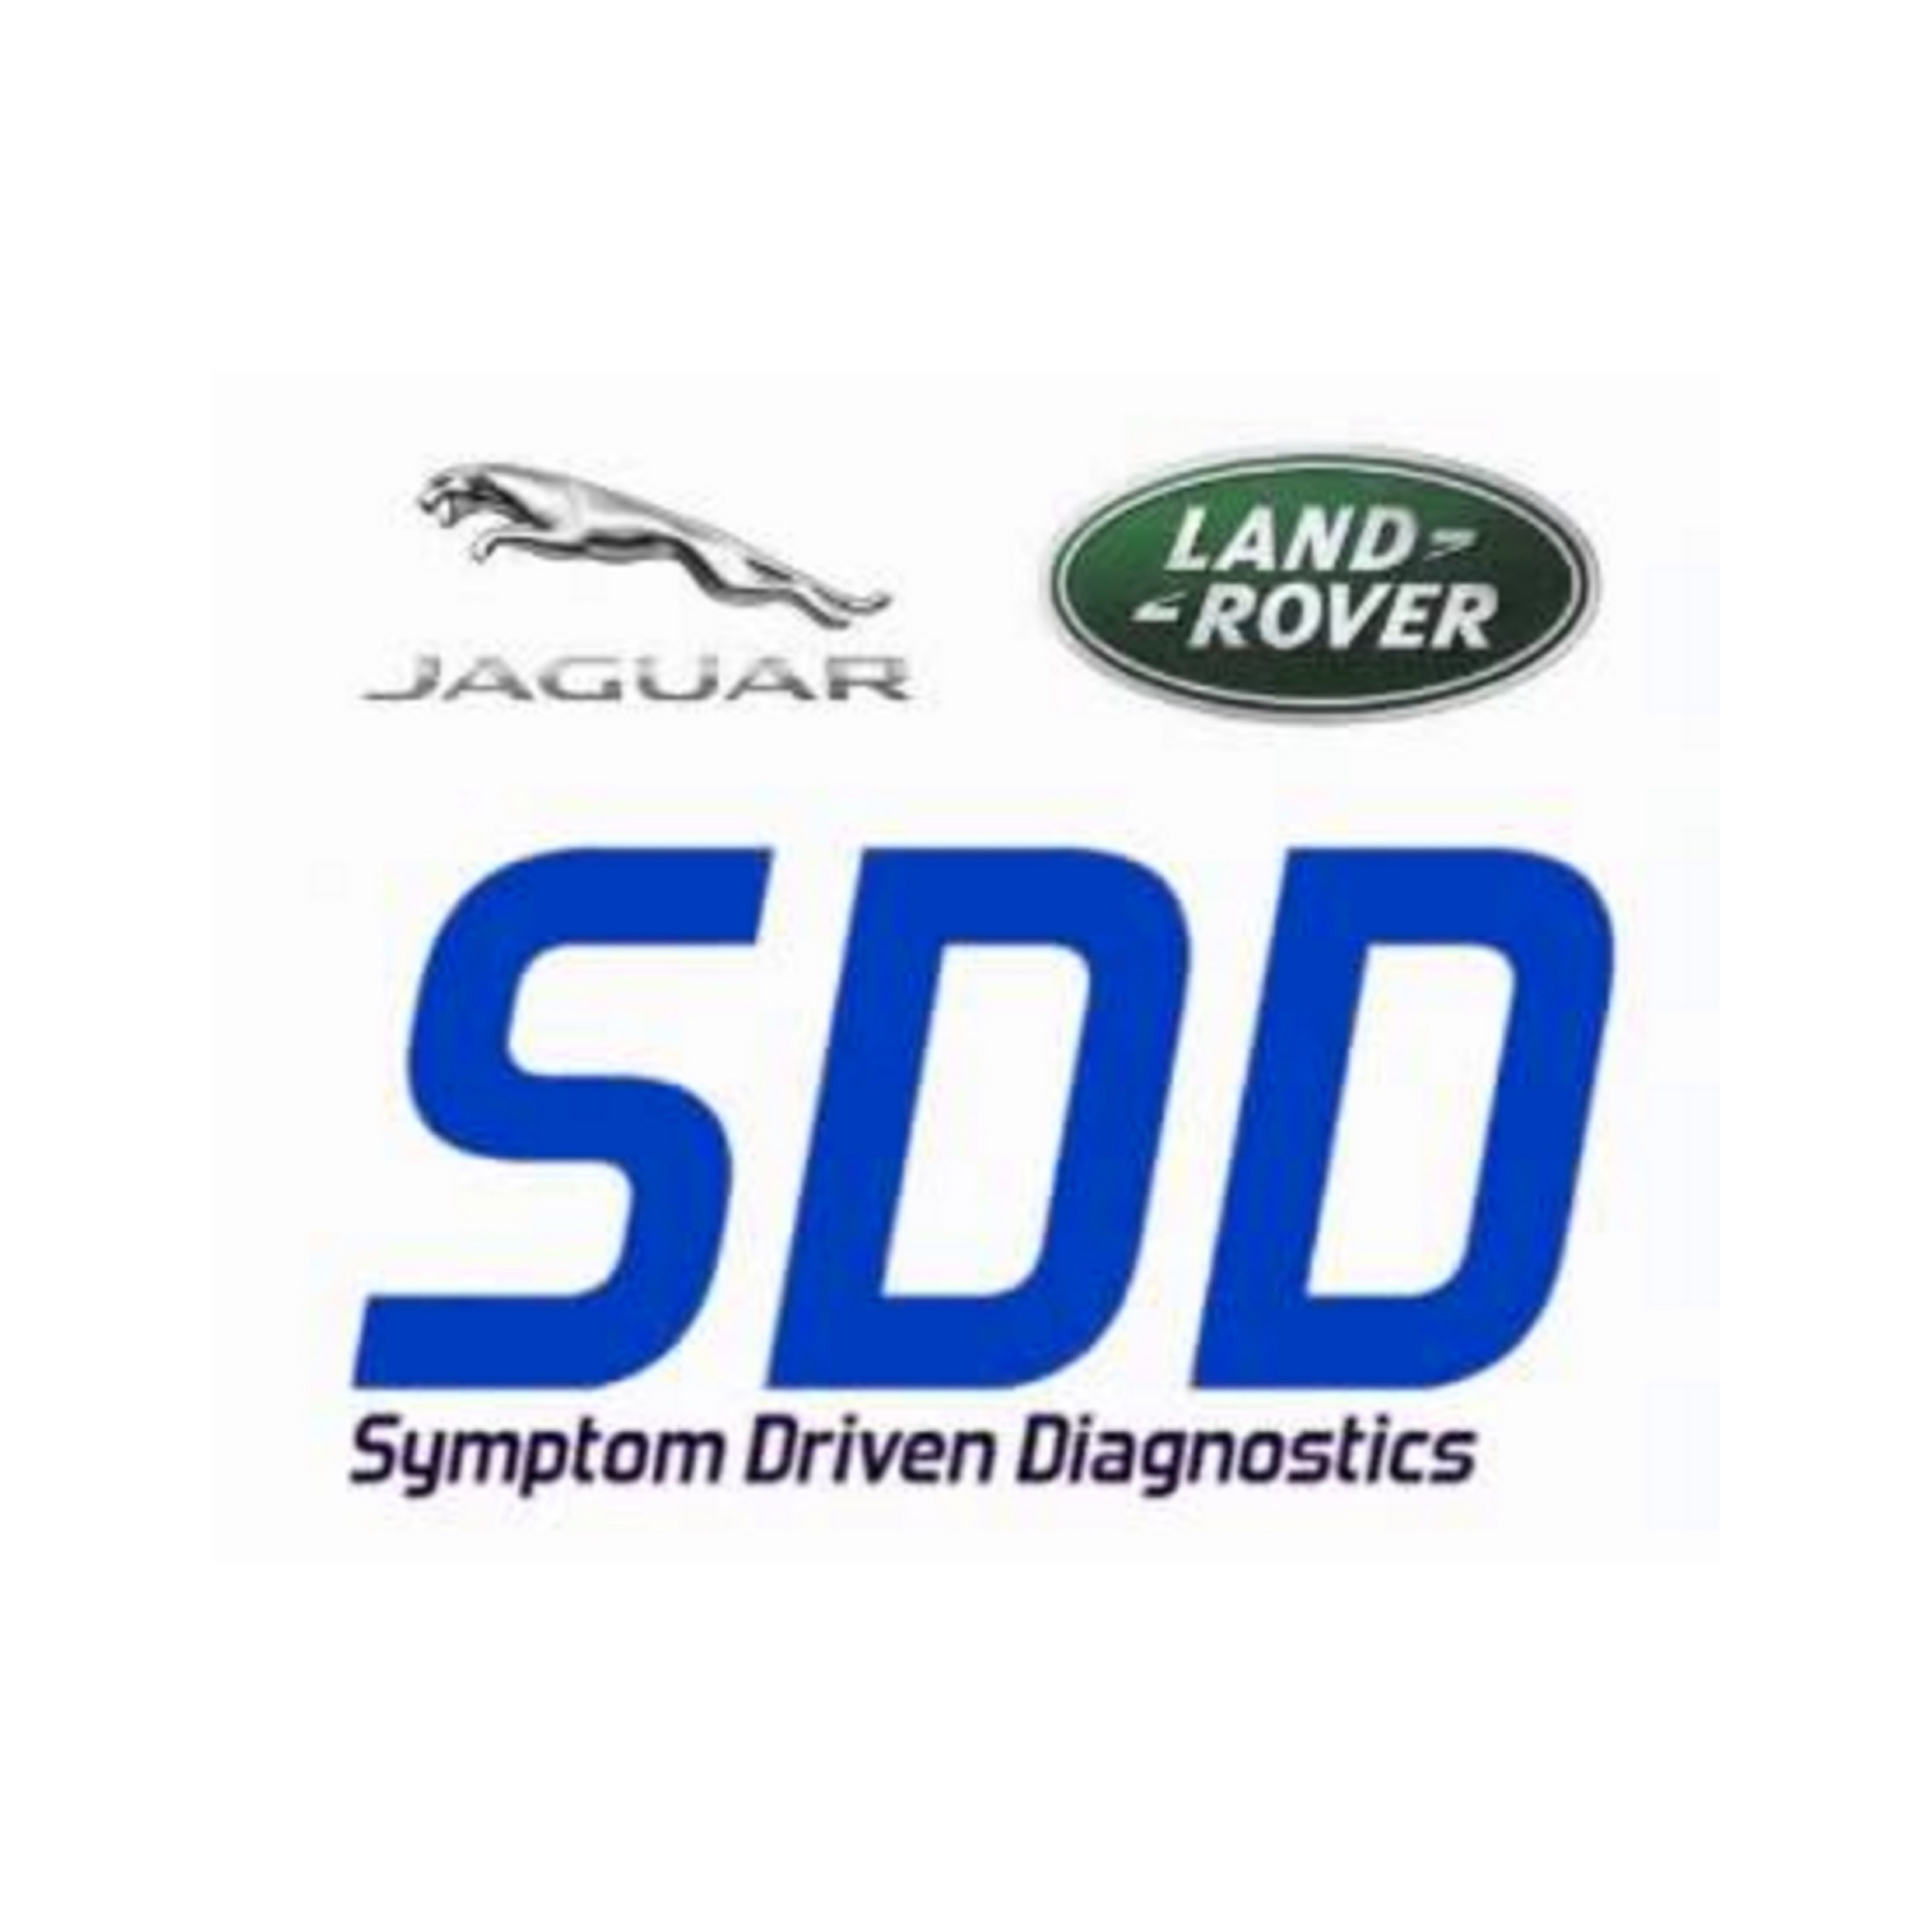 sdd-symptom-driven-diagnostics